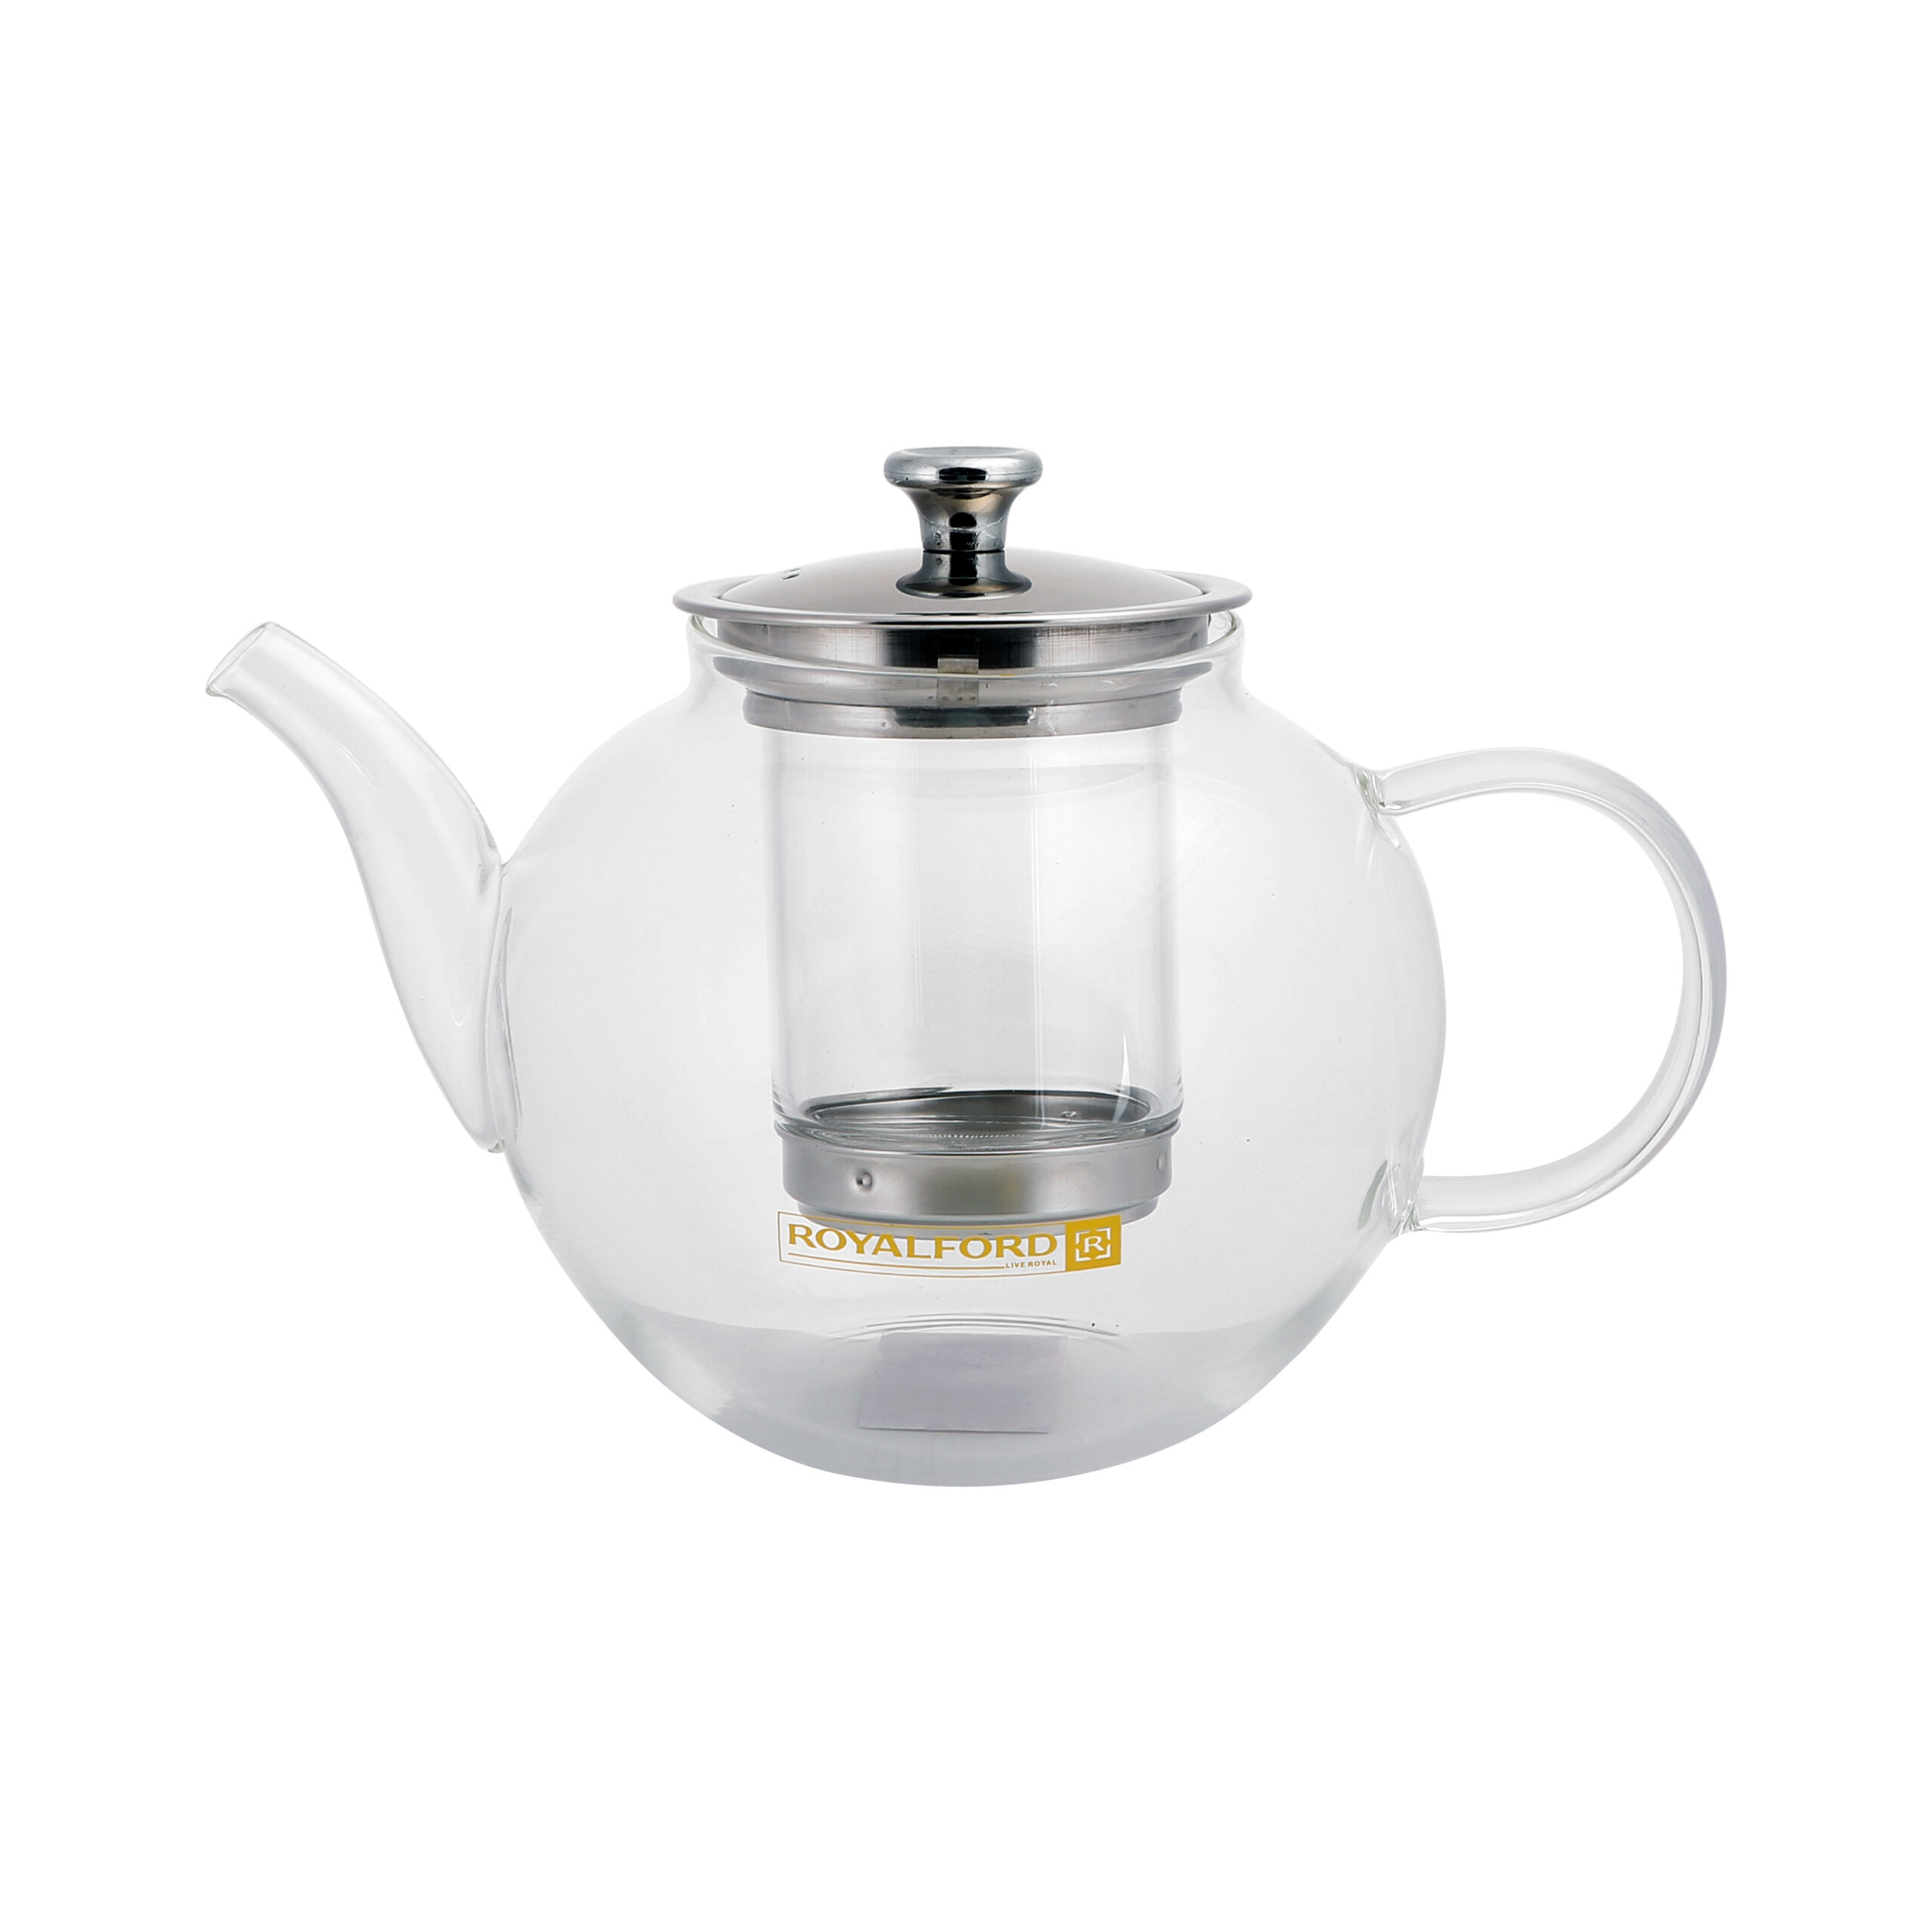 ابريق شاي زجاجي مع مصفاة ( 1200Ml) Royalford Glass Tea Pot With Stainless Steel Strainer